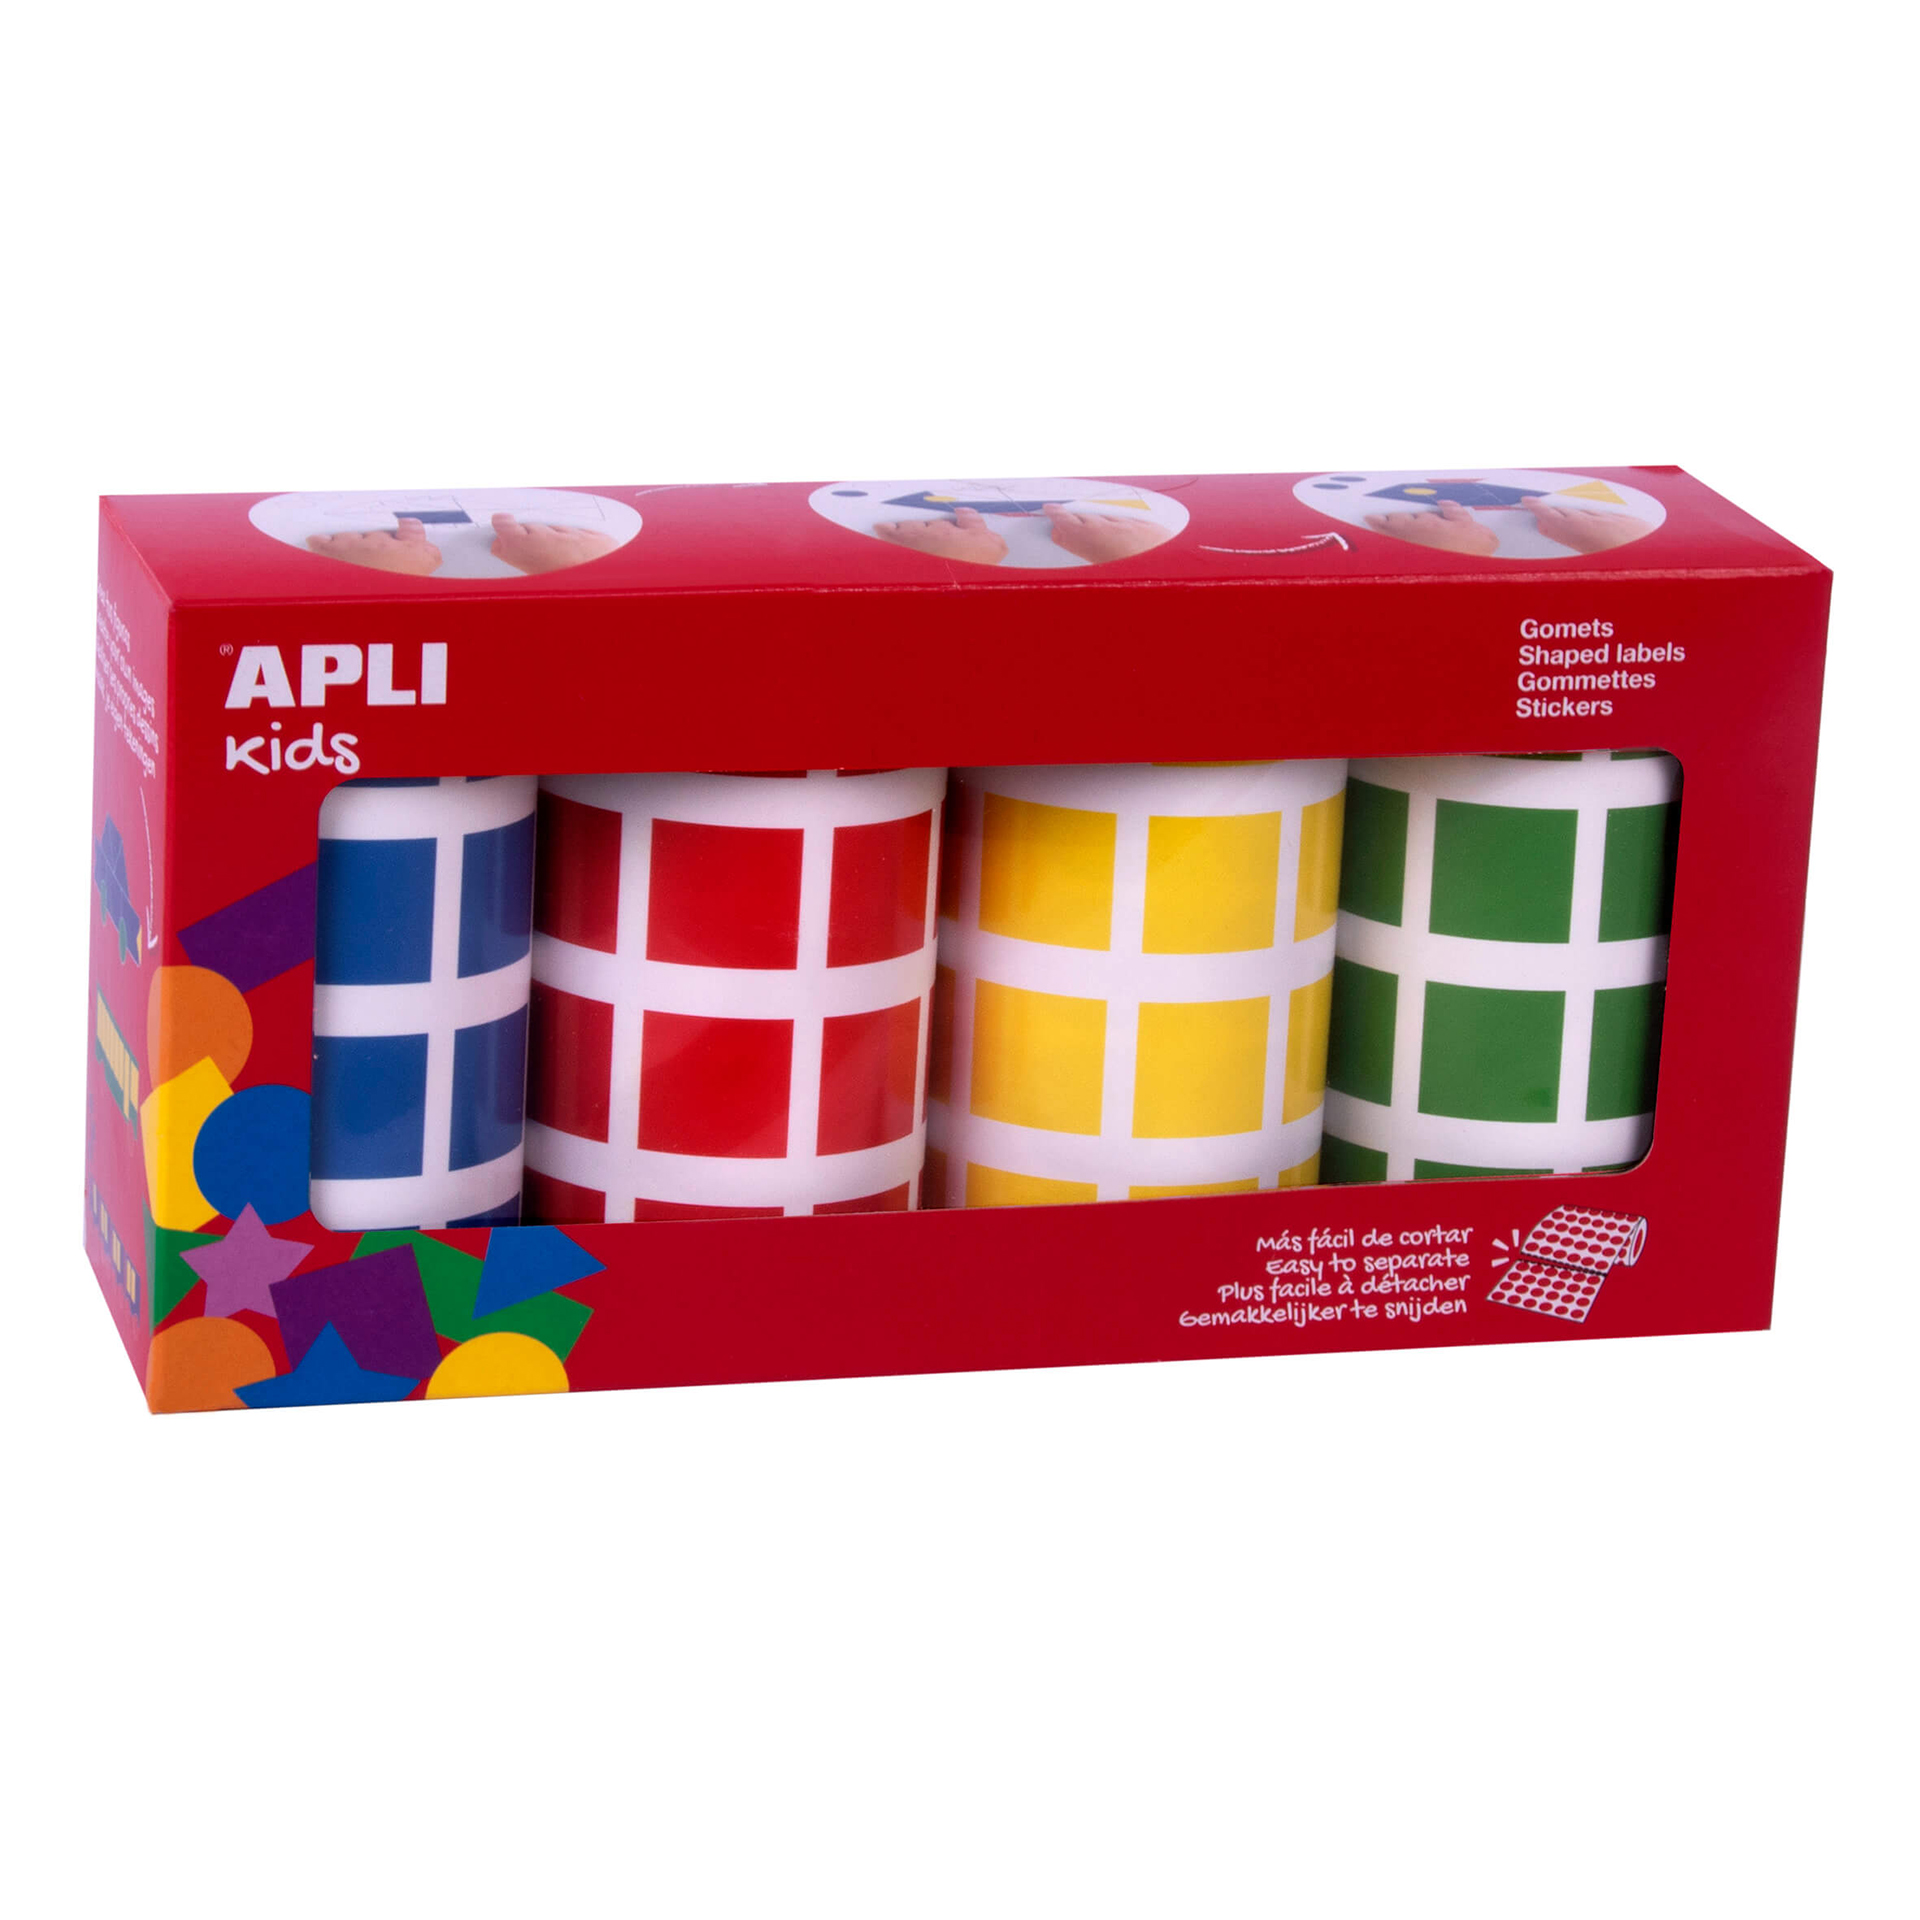 Gomets carrés adhésifs permanents Apli - Taille 20 x 20 mm - Paquet de 4 rouleaux de couleurs assorties - 7080 Gomets par paquet